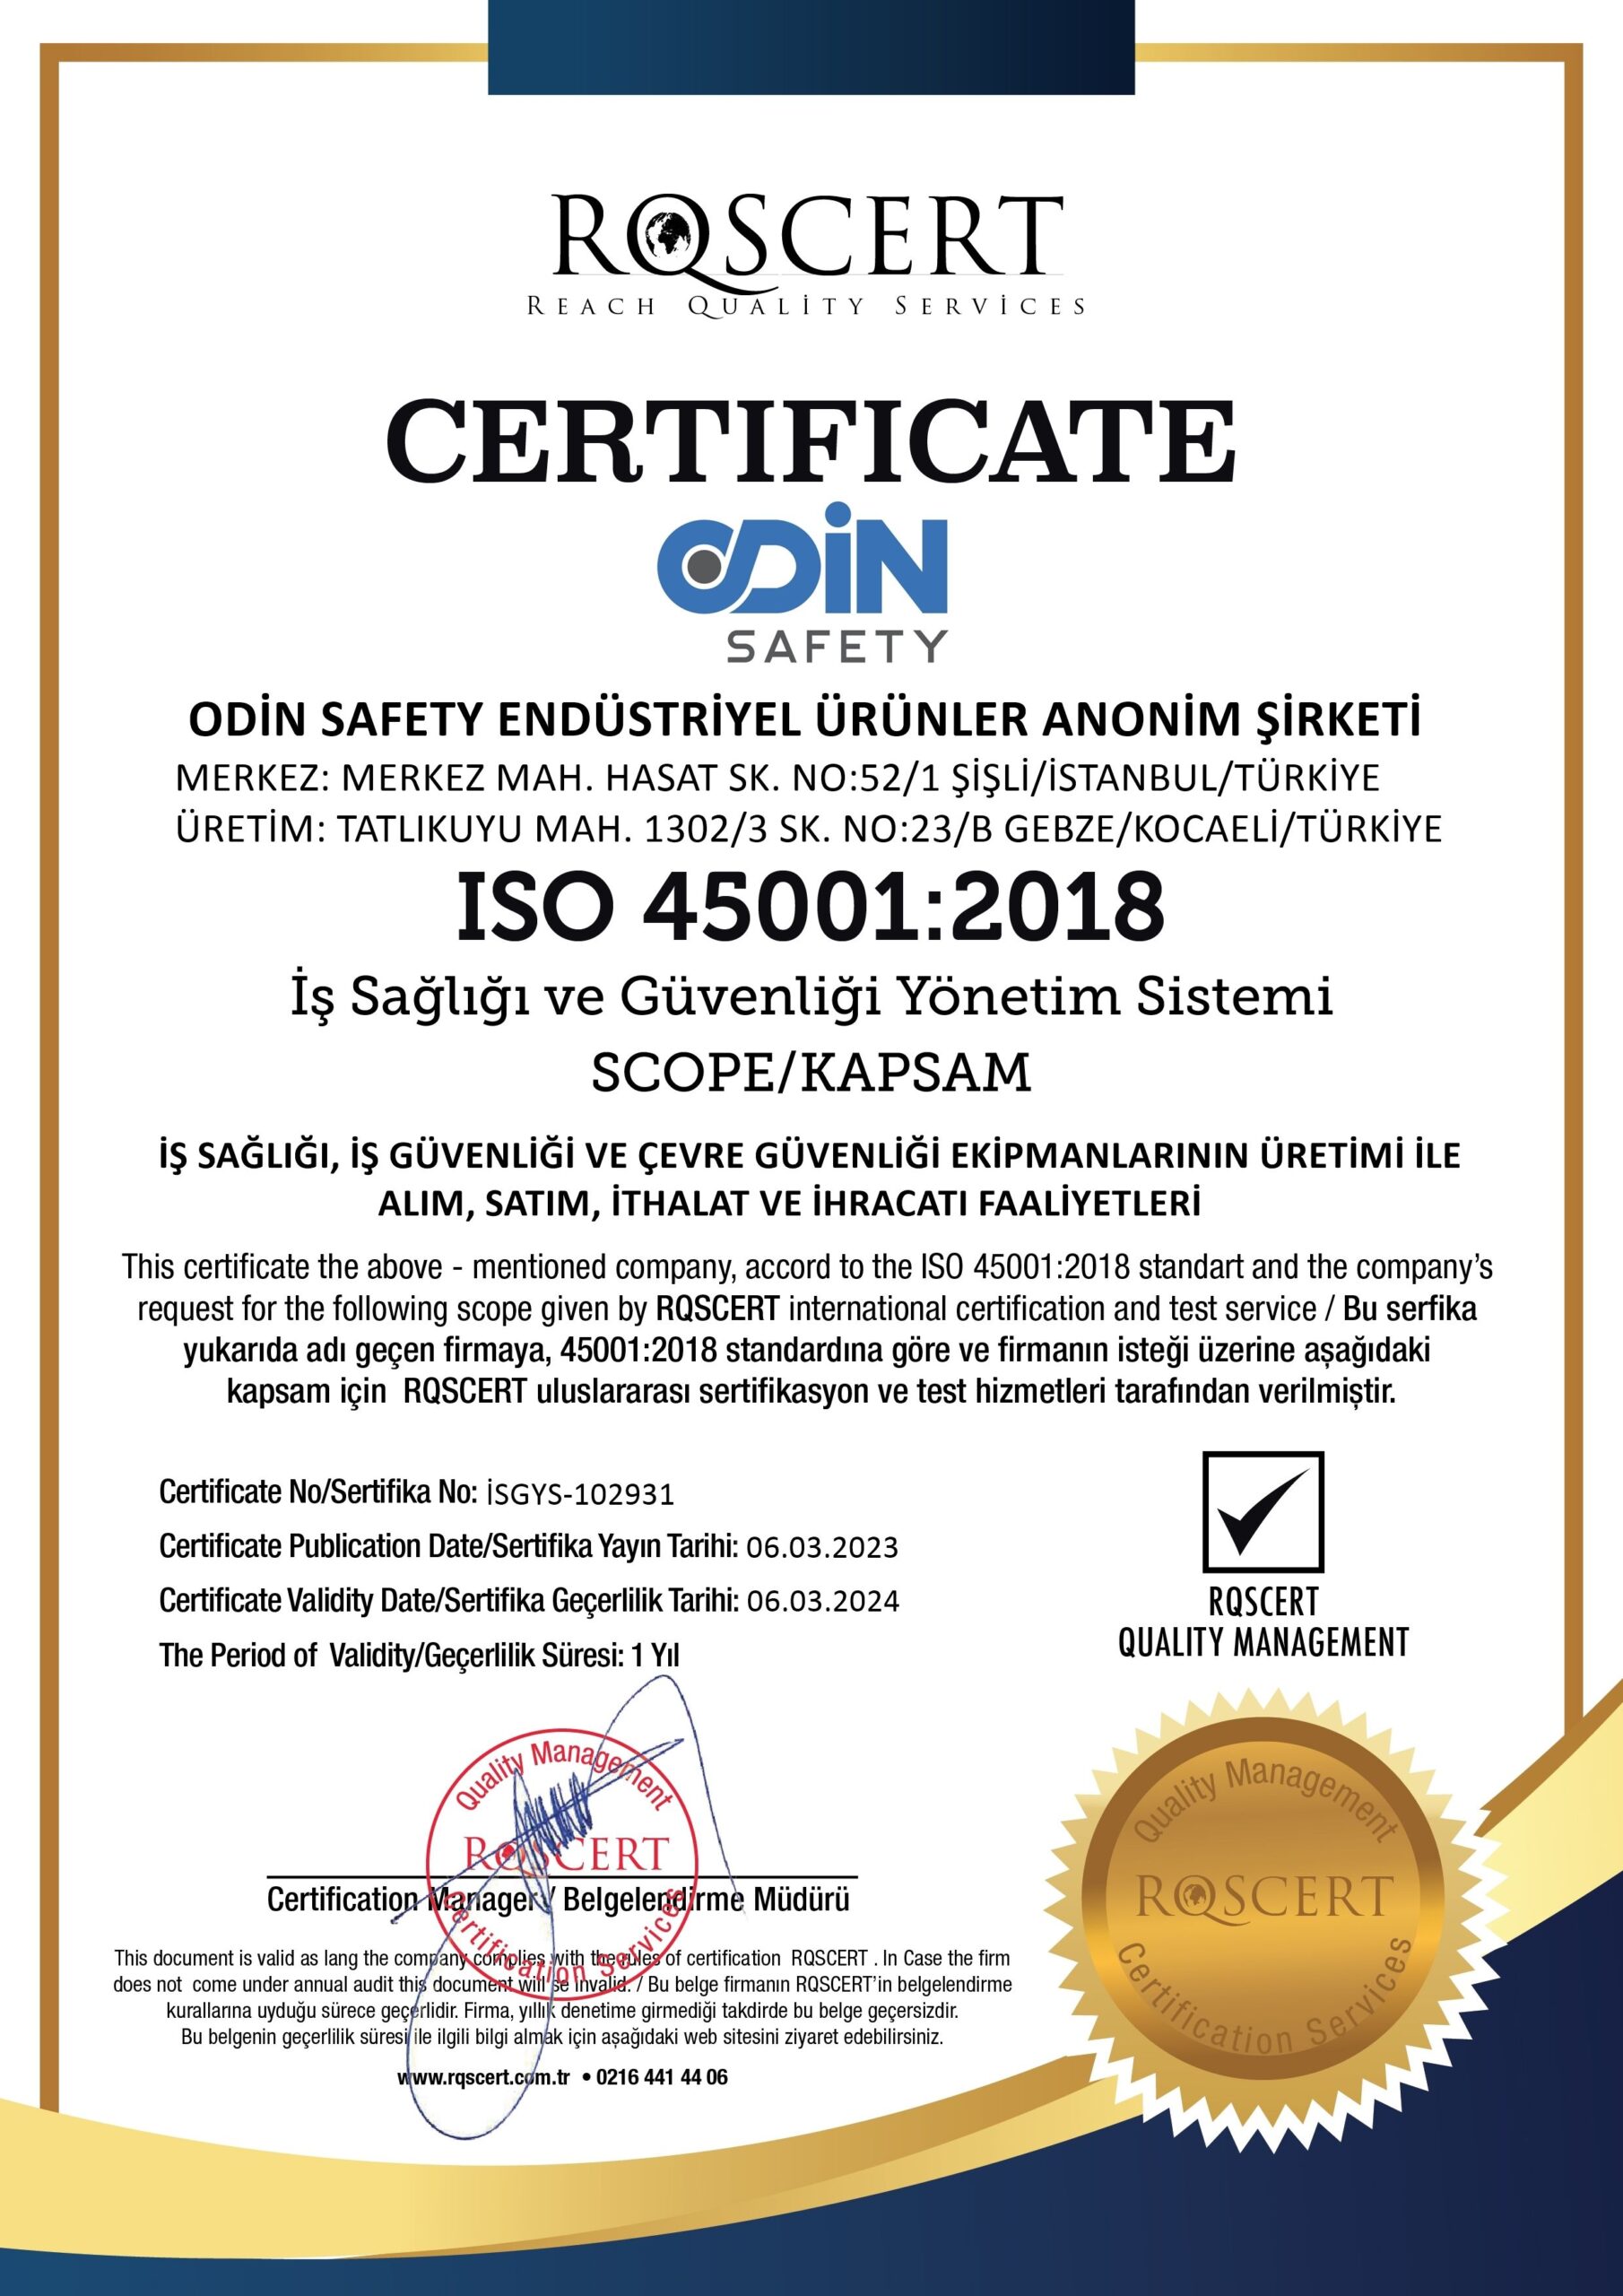 ODİN SAFETY ISO 45001 (1)